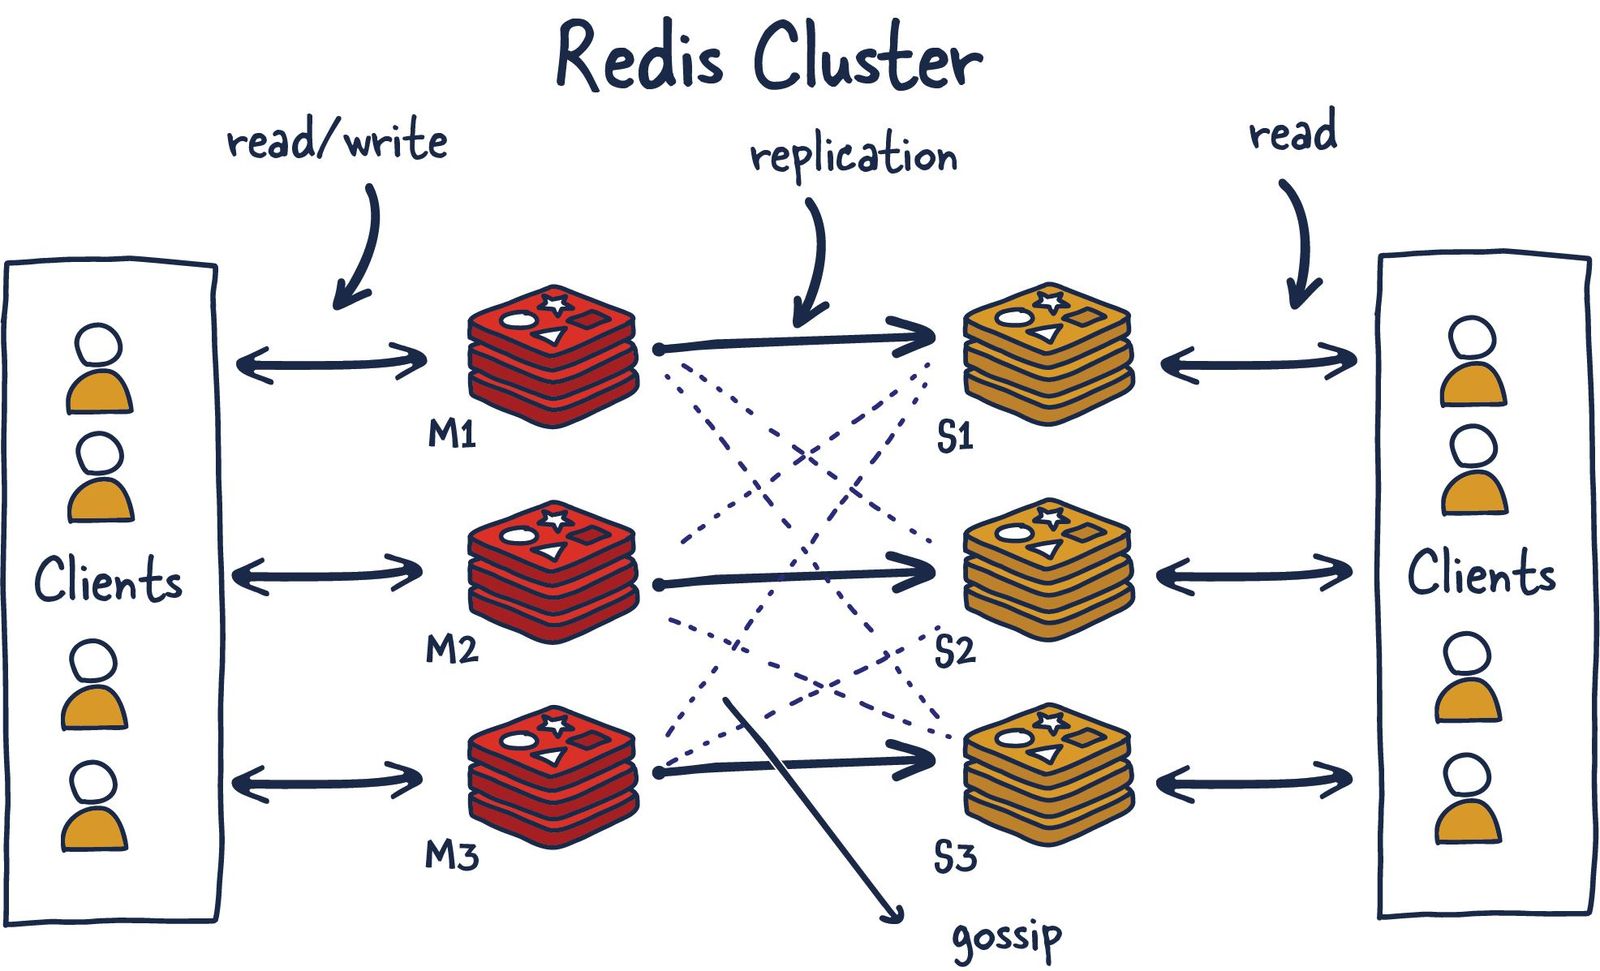 Redis cluster